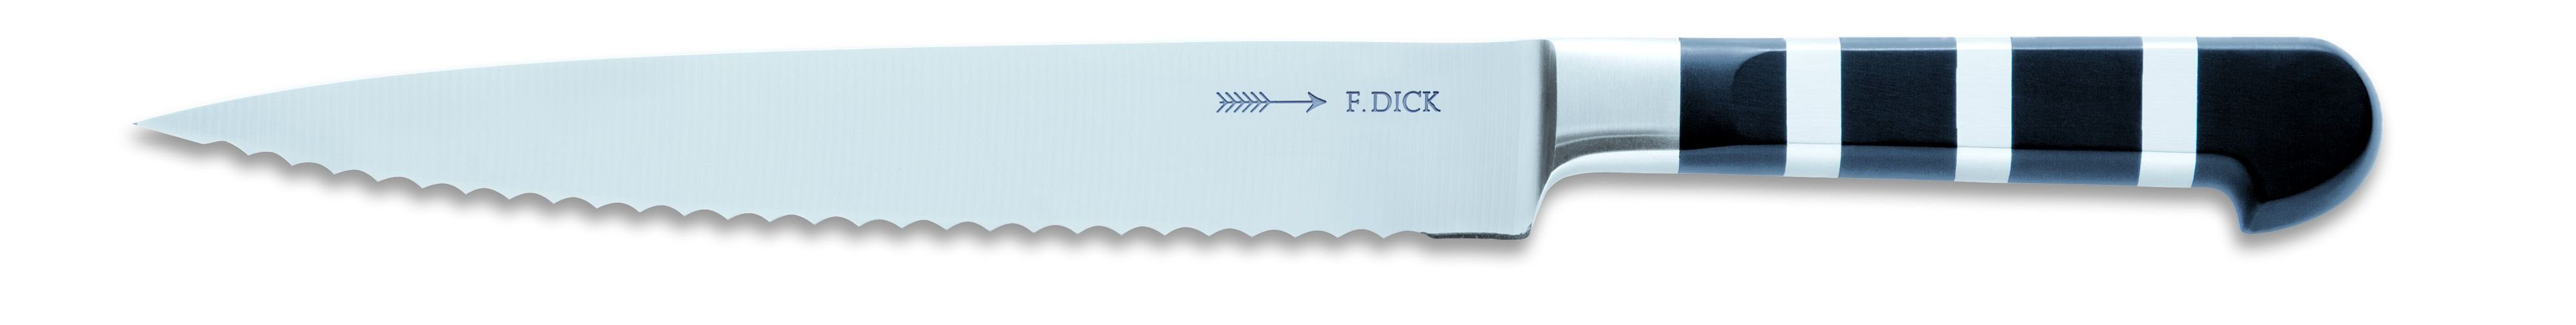 F. DICK Brotmesser Dick Messer 1905 Küchenmesser Klinge 21 cm Stahl rostfrei